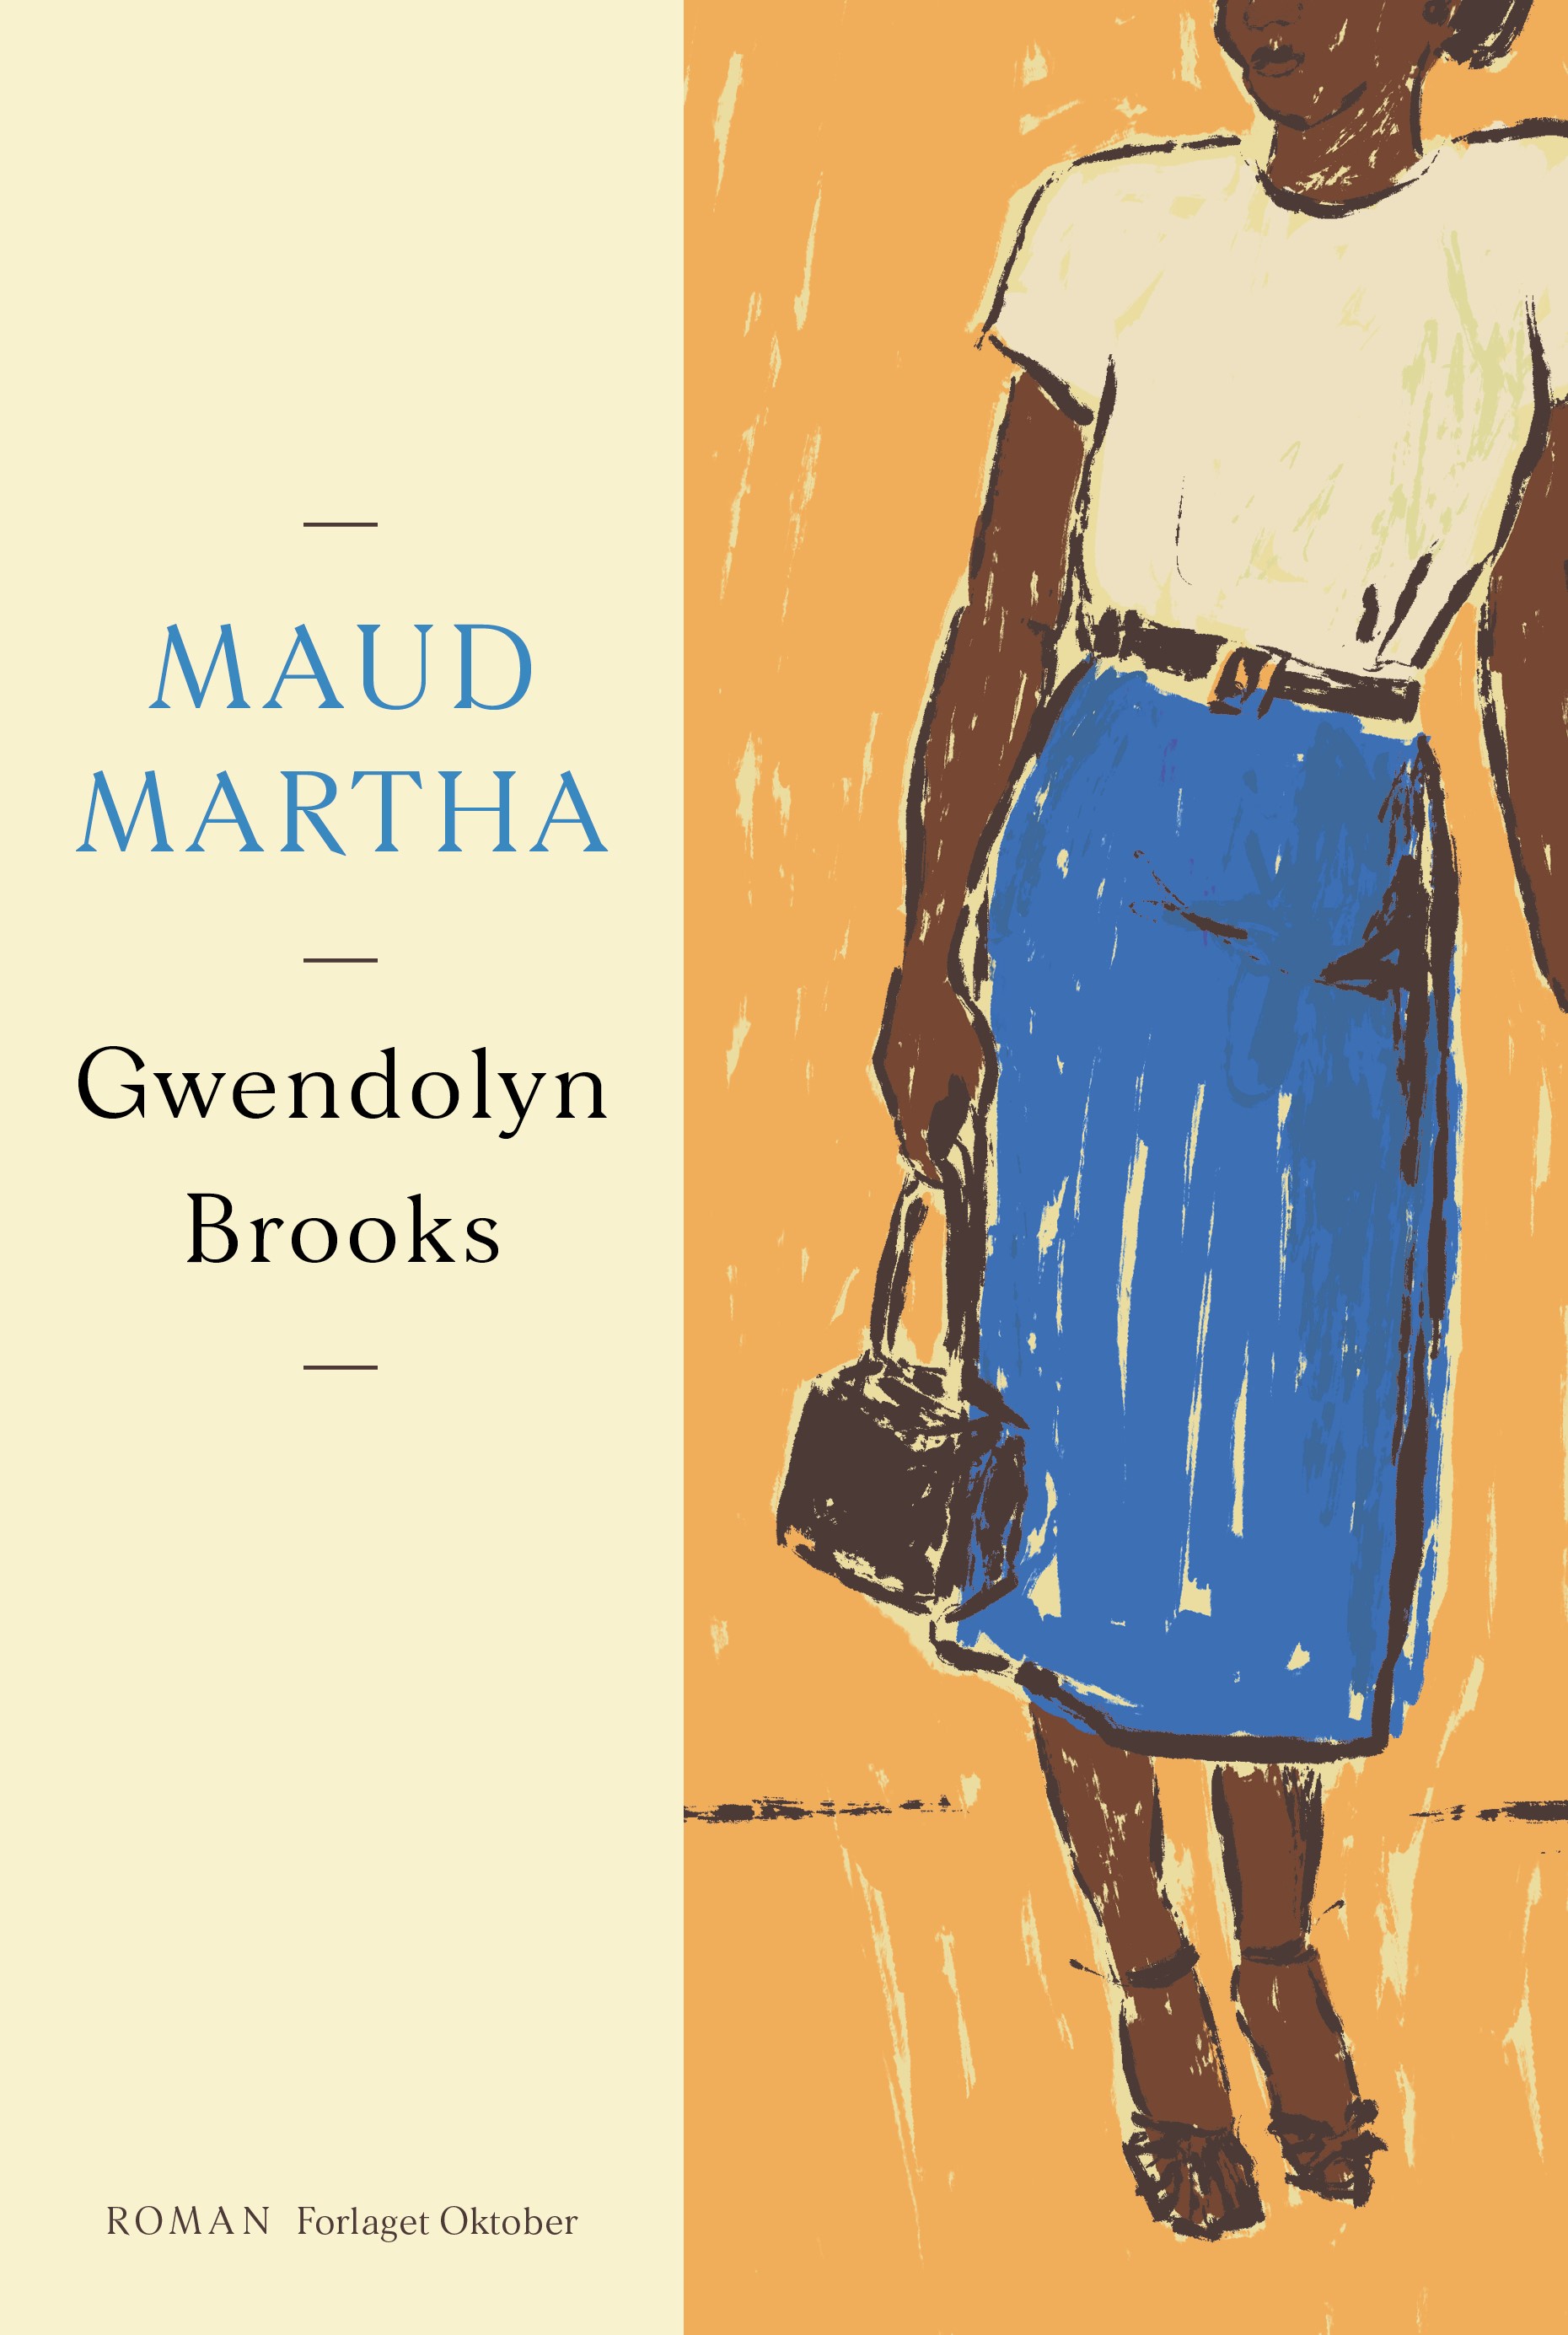 Gwendolyn Brooks - Maud Martha